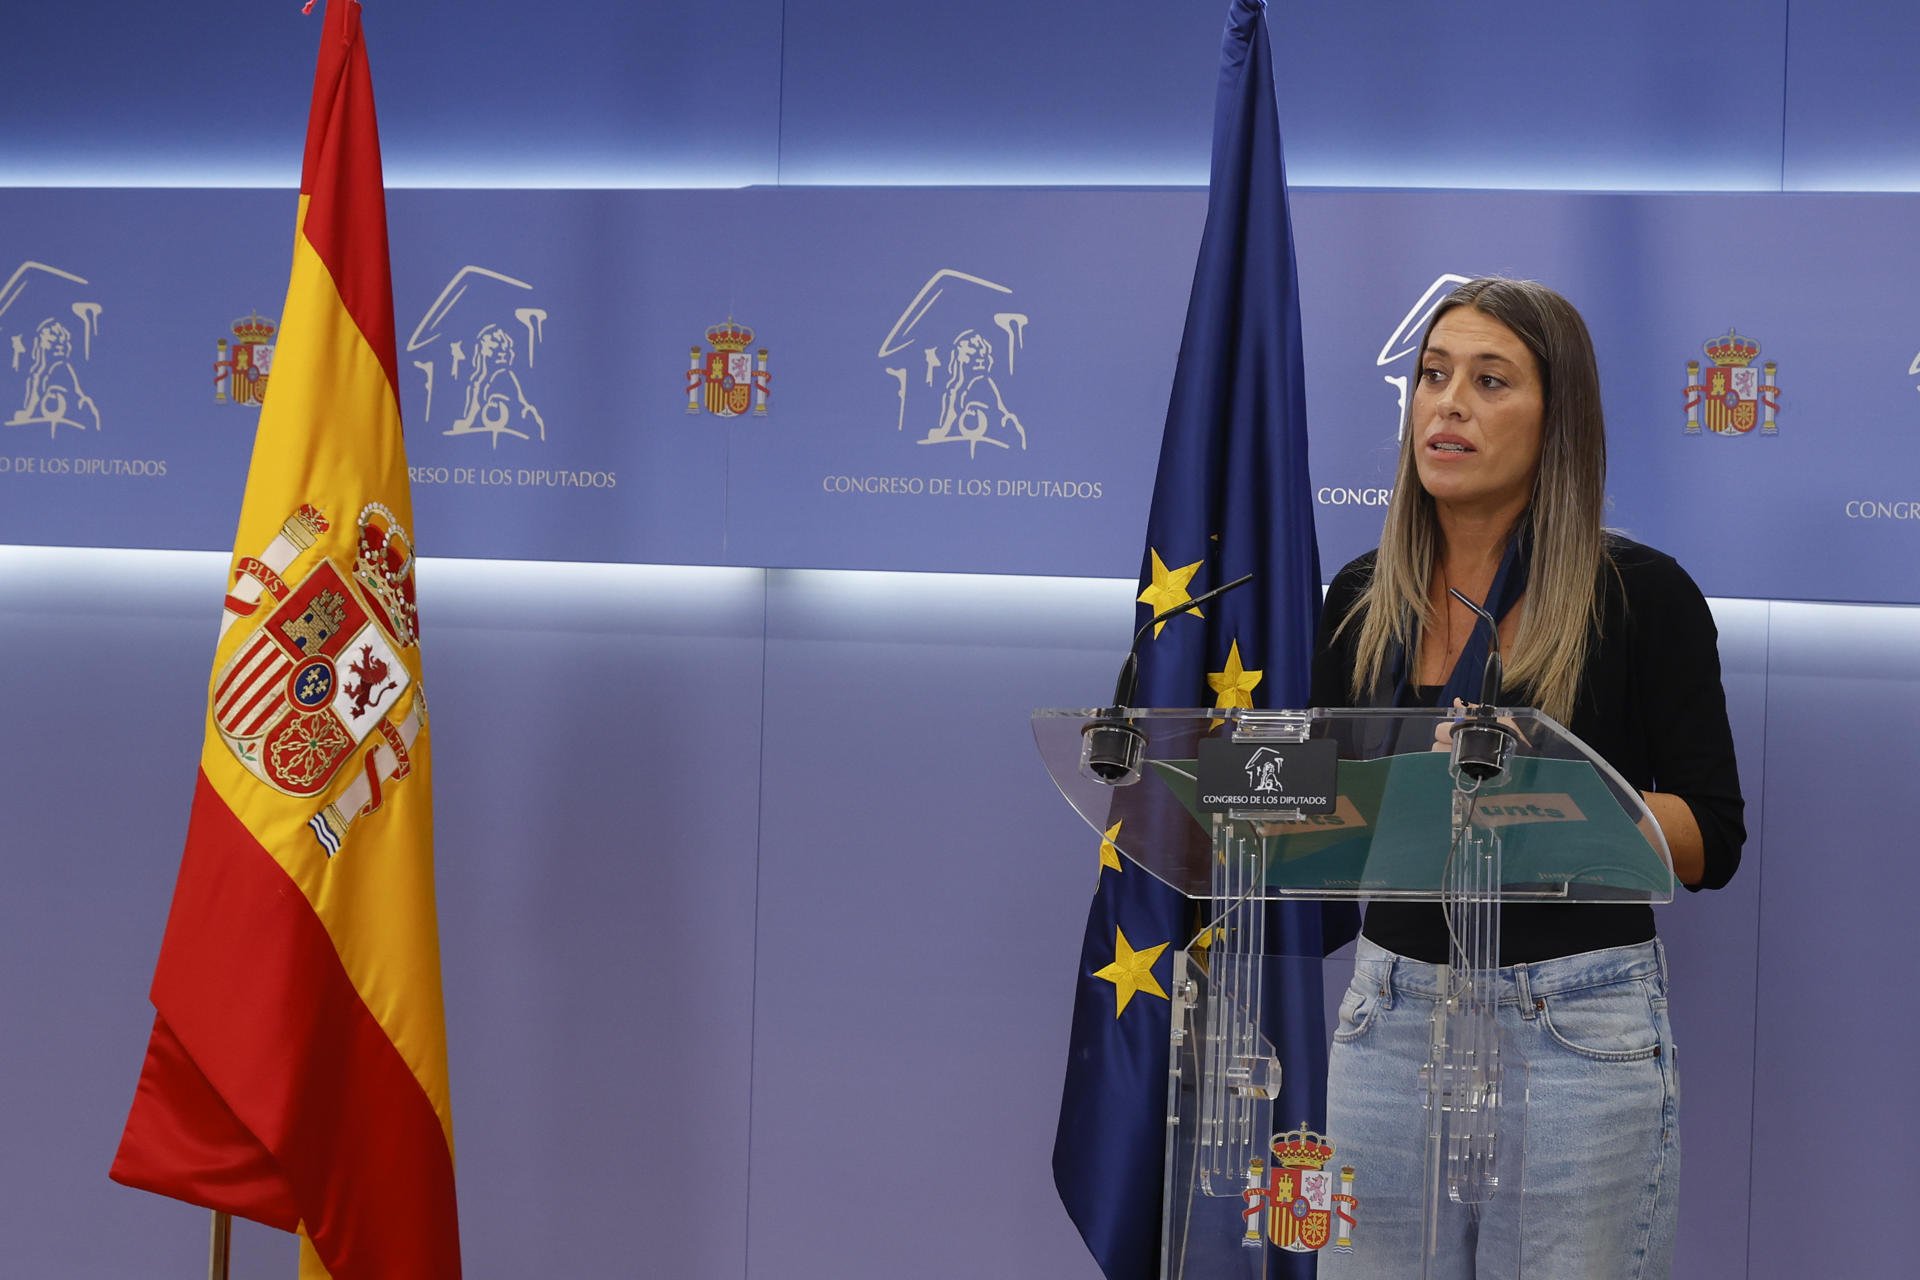 Míriam Nogueras aparta la bandera española de la sala de prensa del Congreso e irrita al españolismo